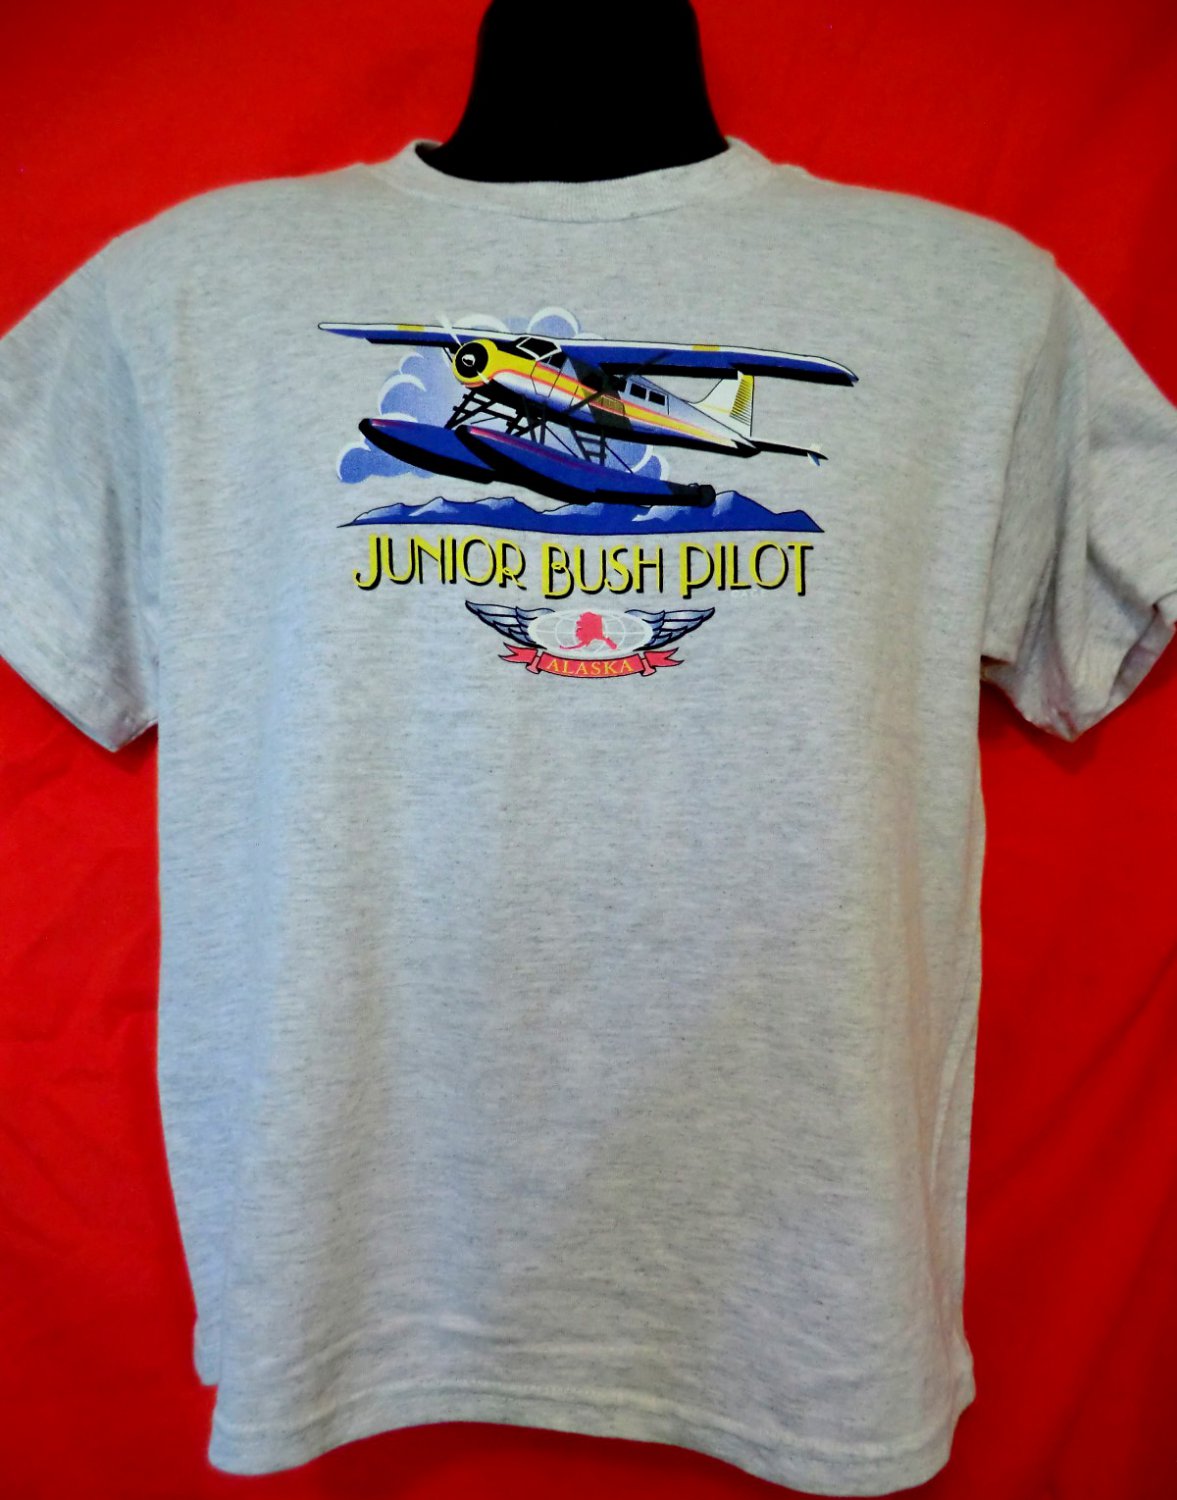 Kids’s T-Shirt JUNIOR BUSH PILOT Alaska Size Large